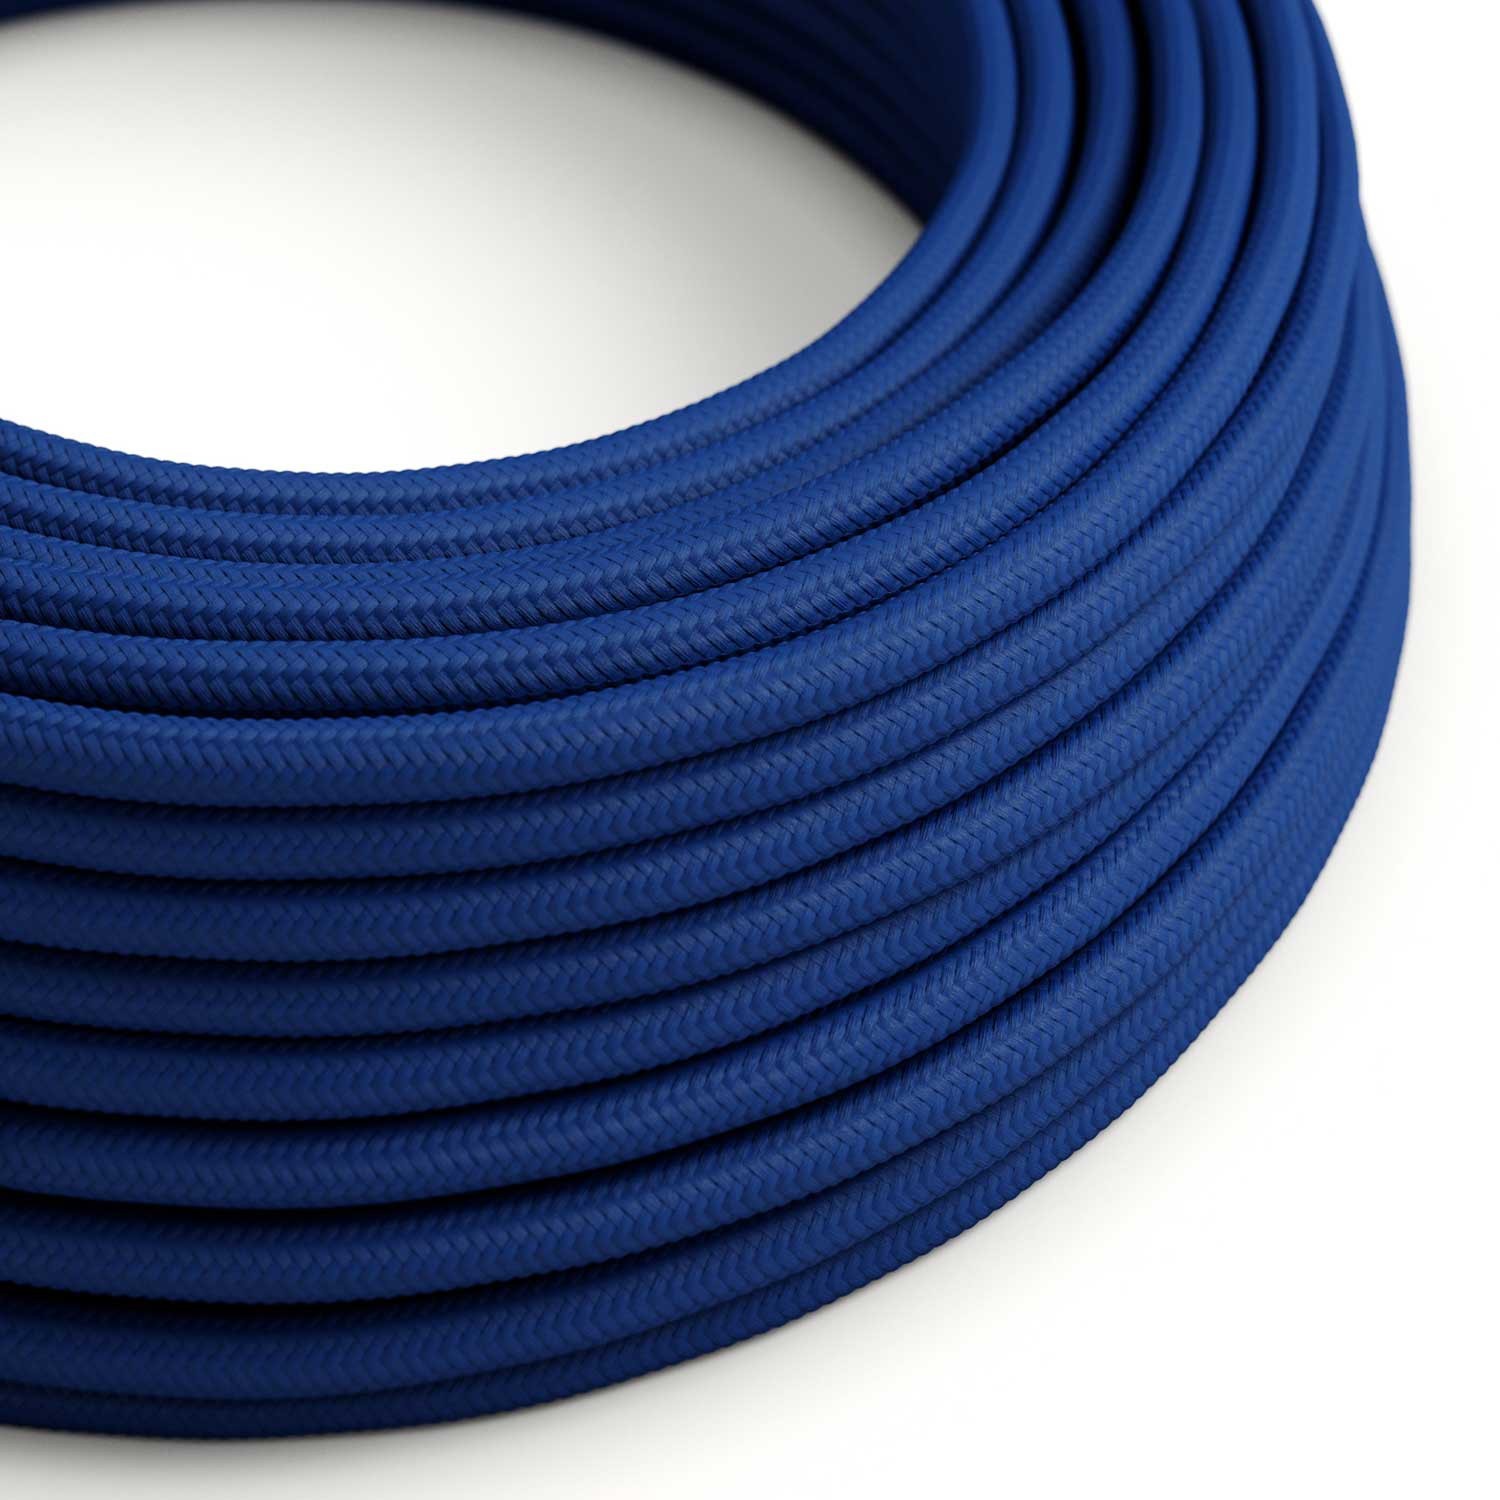 Elektrisches Kabel rund überzogen mit Textil-Seideneffekt Einfarbig Blau RM12